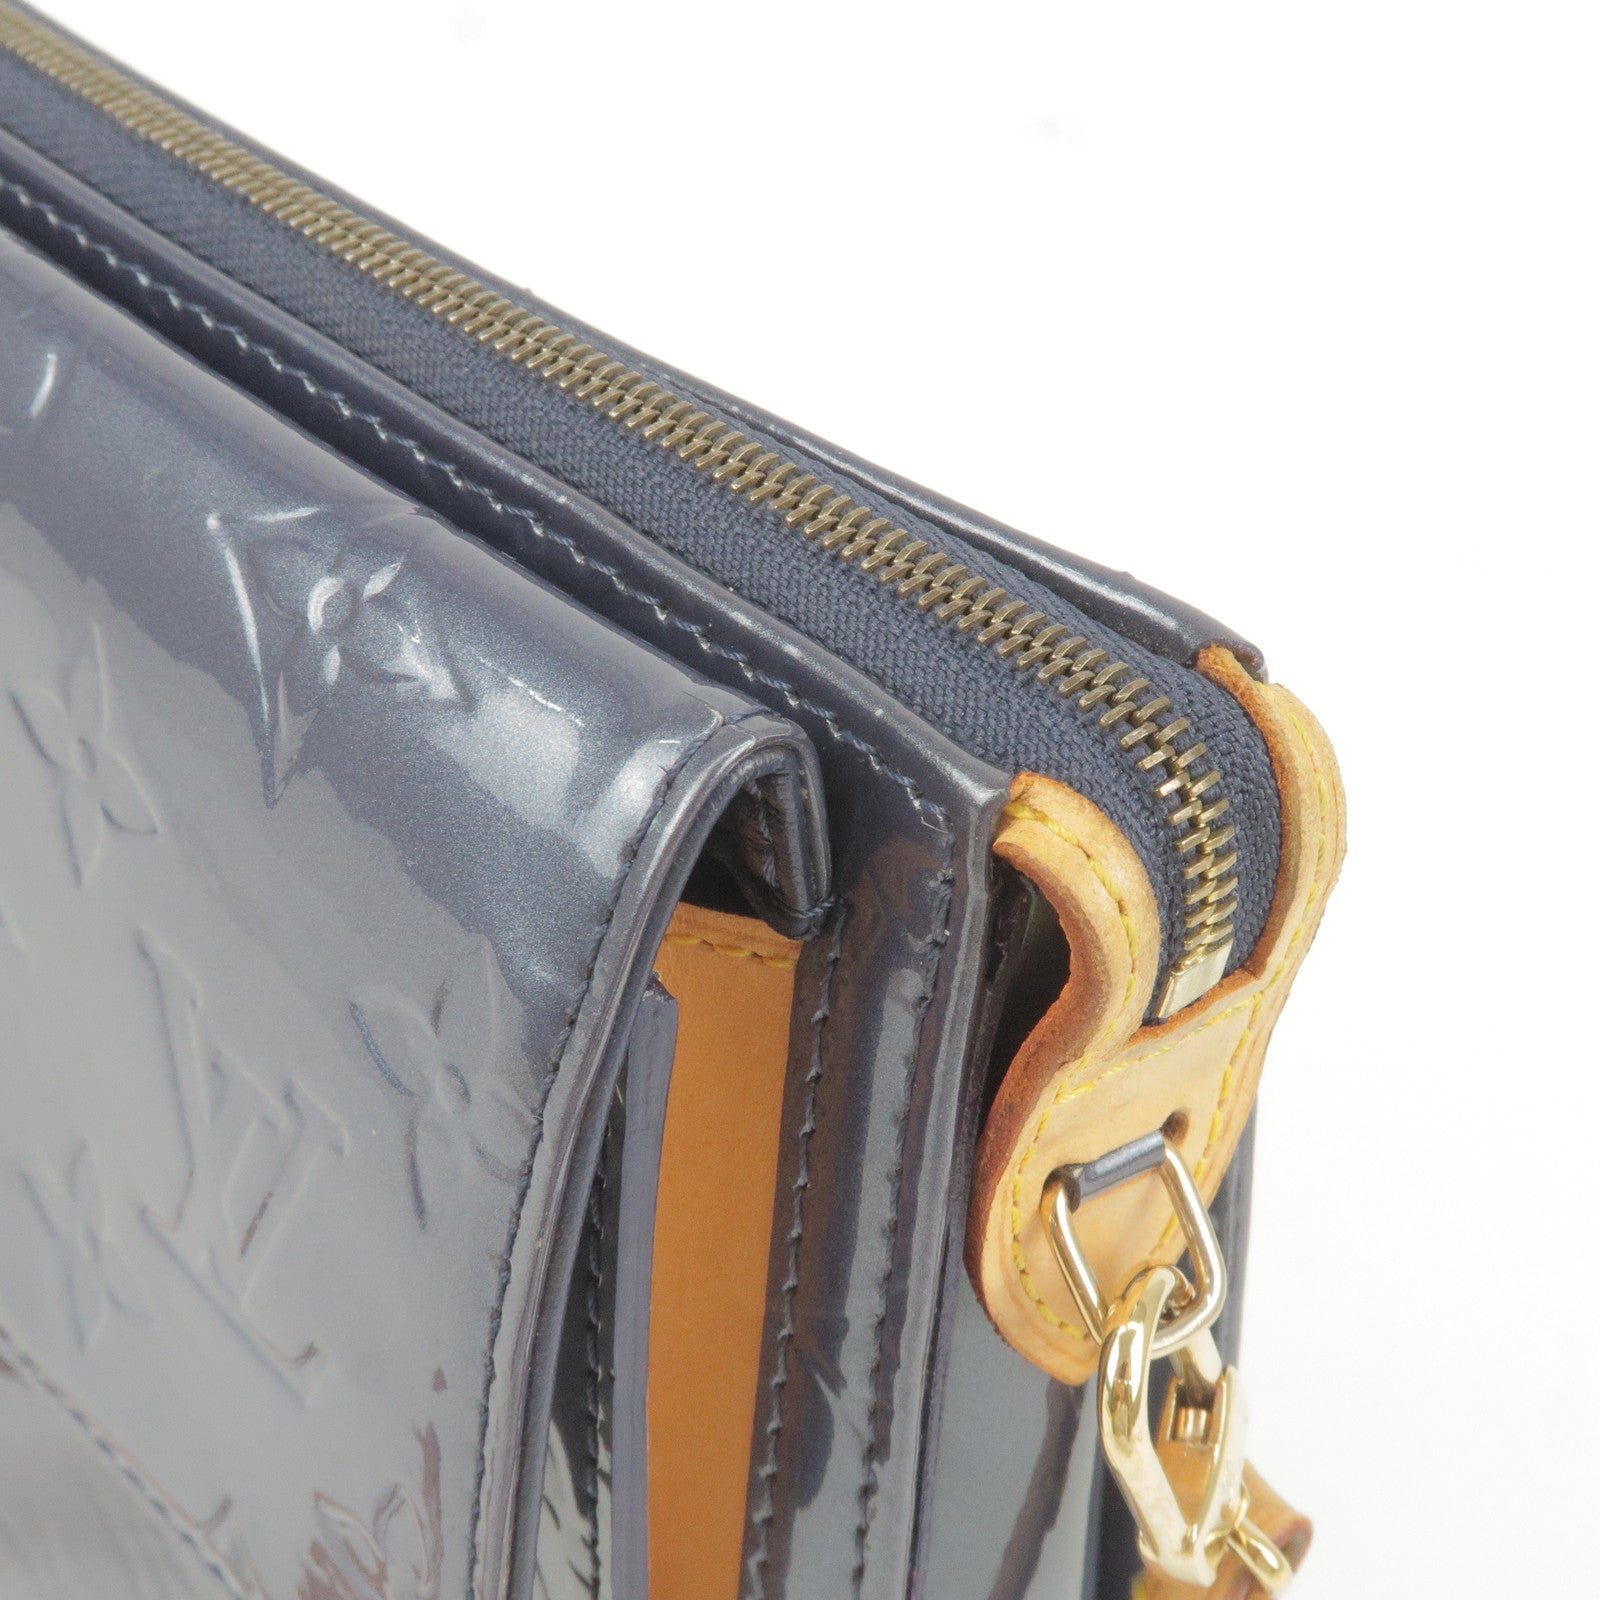 Louis Vuitton Louis Vuitton Mott Beige Vernis Leather Bag +